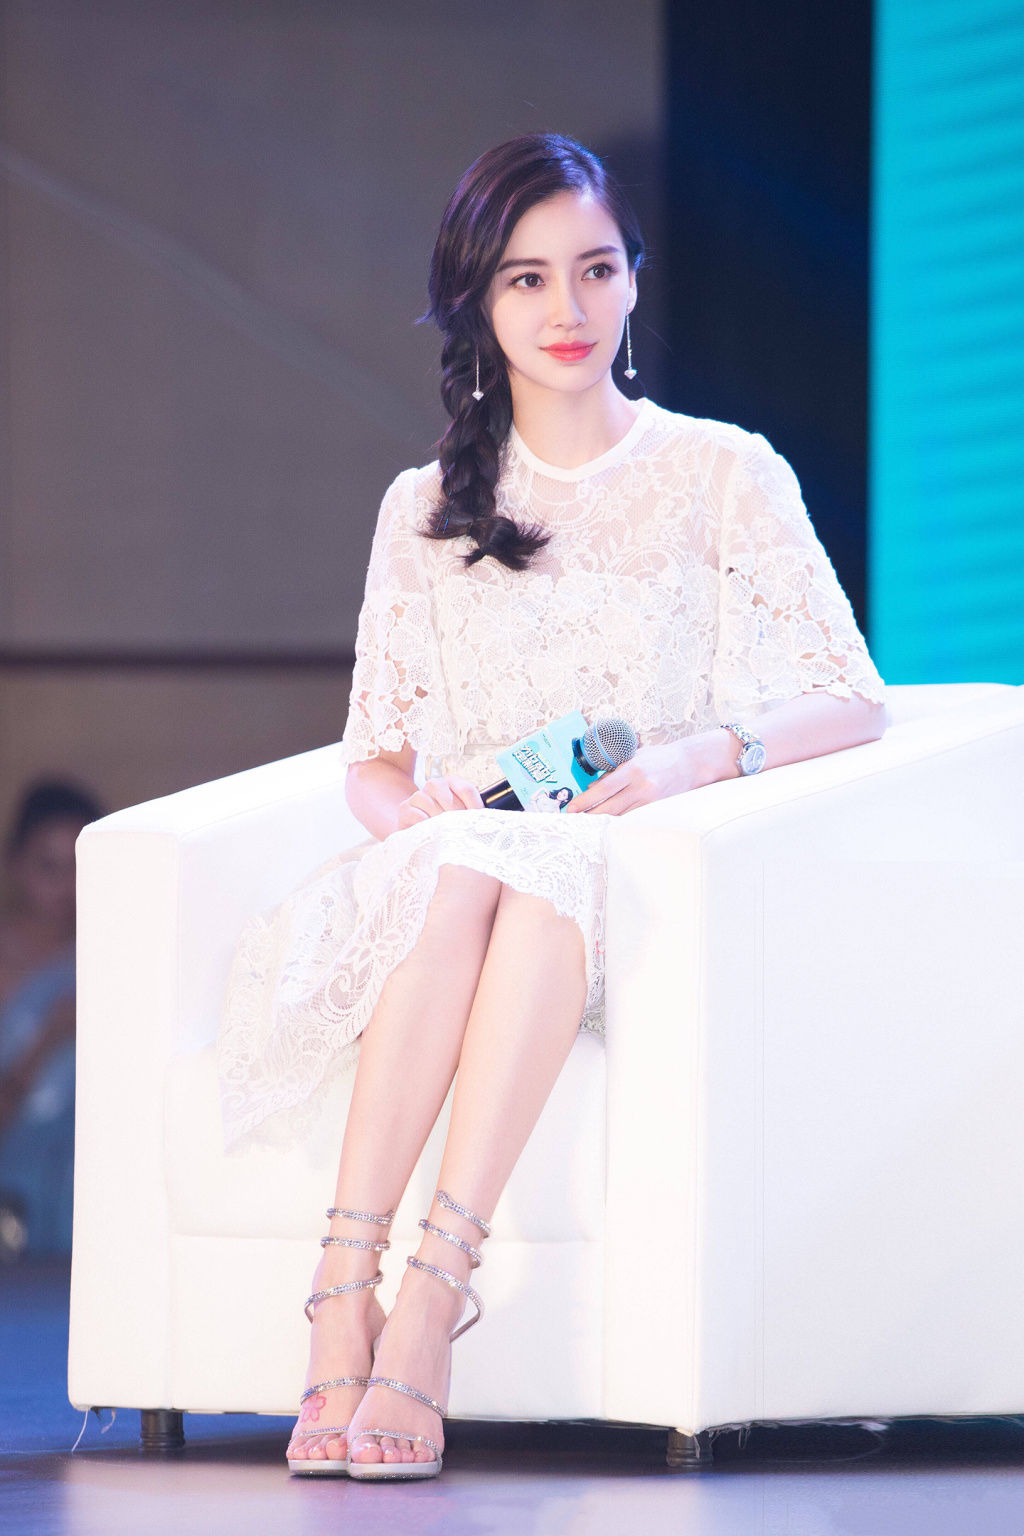 杨颖出席宣传活动,喜欢高跟凉鞋的她秀出白嫩